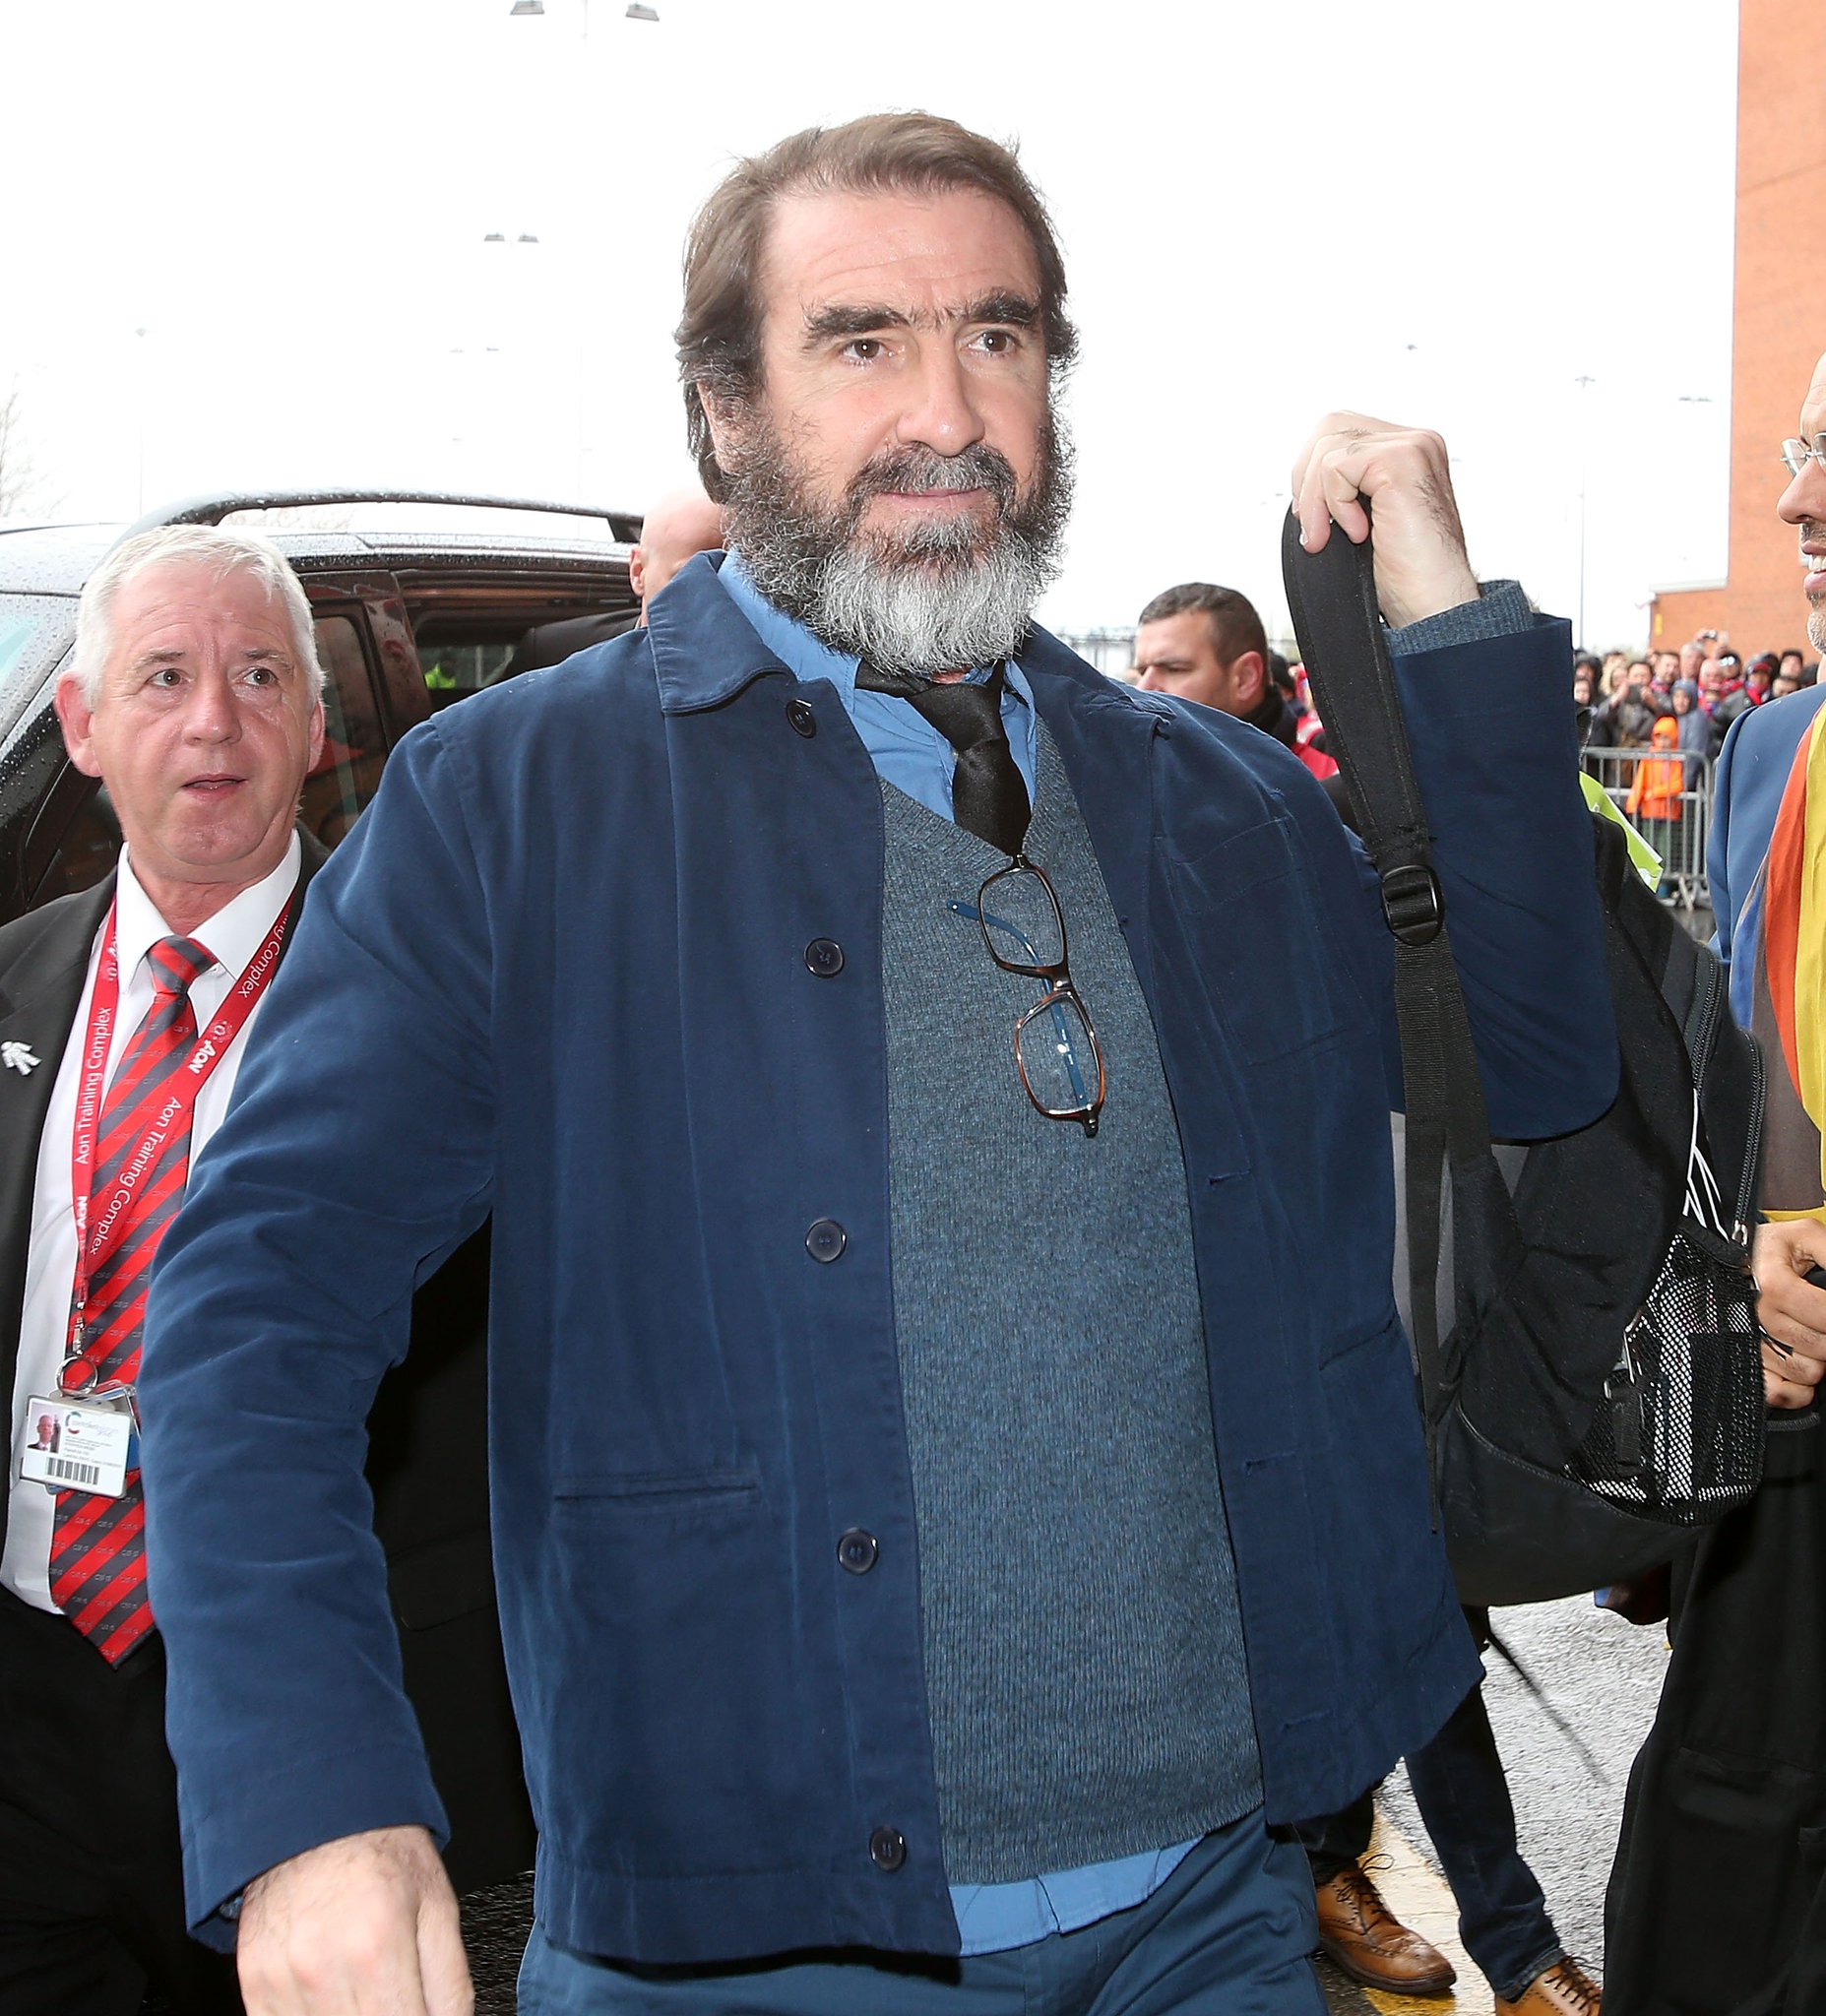  Happy birthday to Man Utd Legend Eric Cantona! 